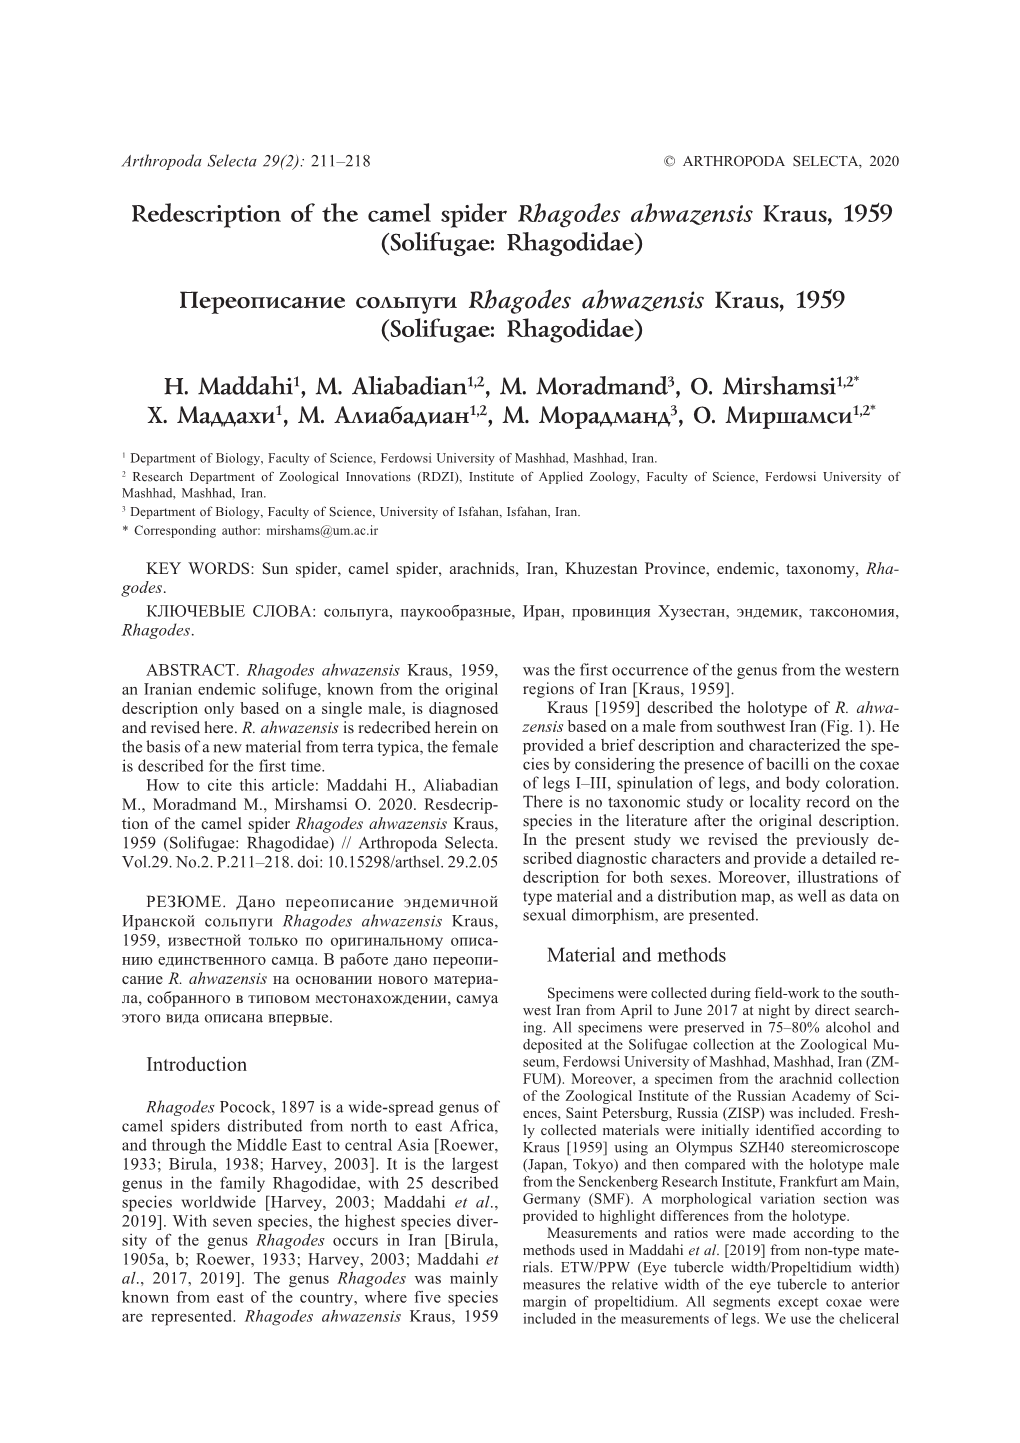 Redescription of the Camel Spider Rhagodes Ahwazensis Kraus, 1959 (Solifugae: Rhagodidae)